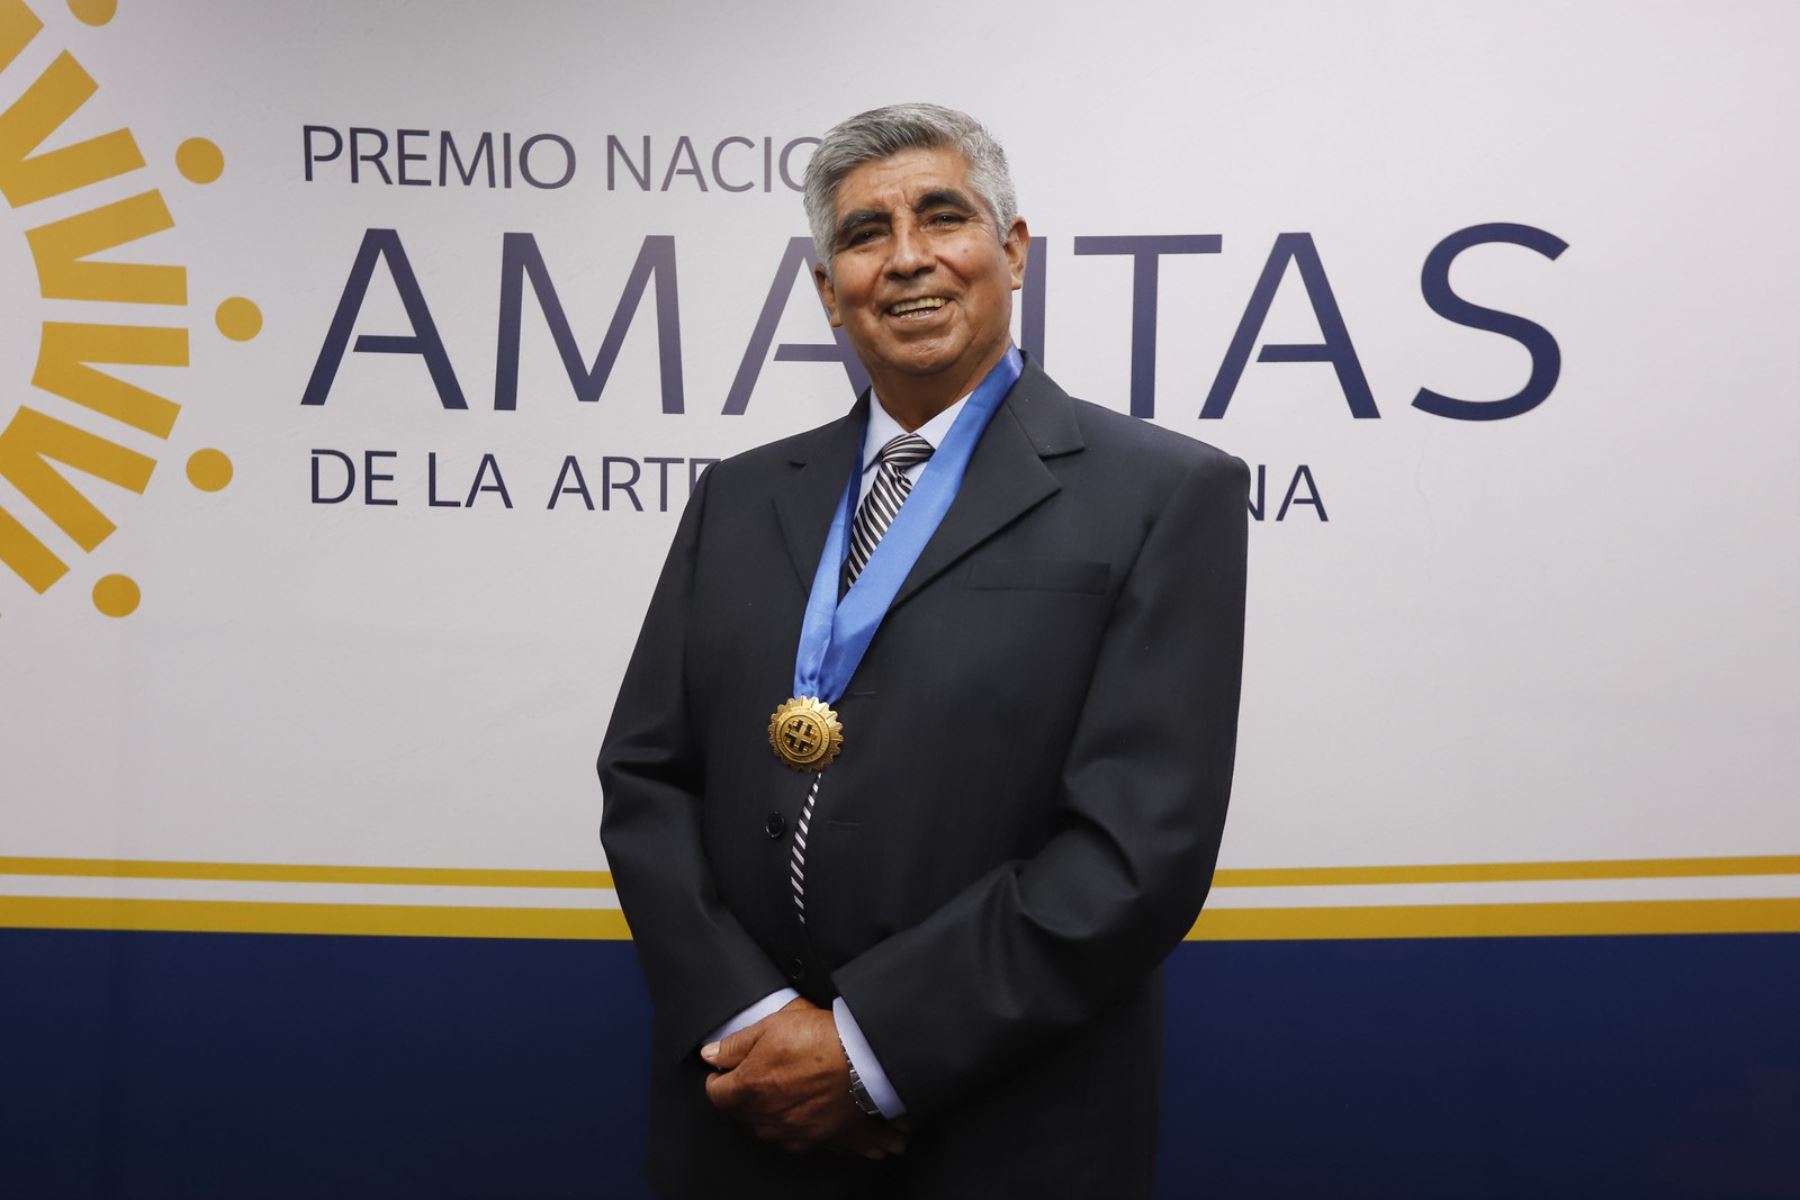 Bernardino Arce, artesano arequipeño, es elegido Amauta de la Artesanía Peruana 2021. Foto: Cortesía.